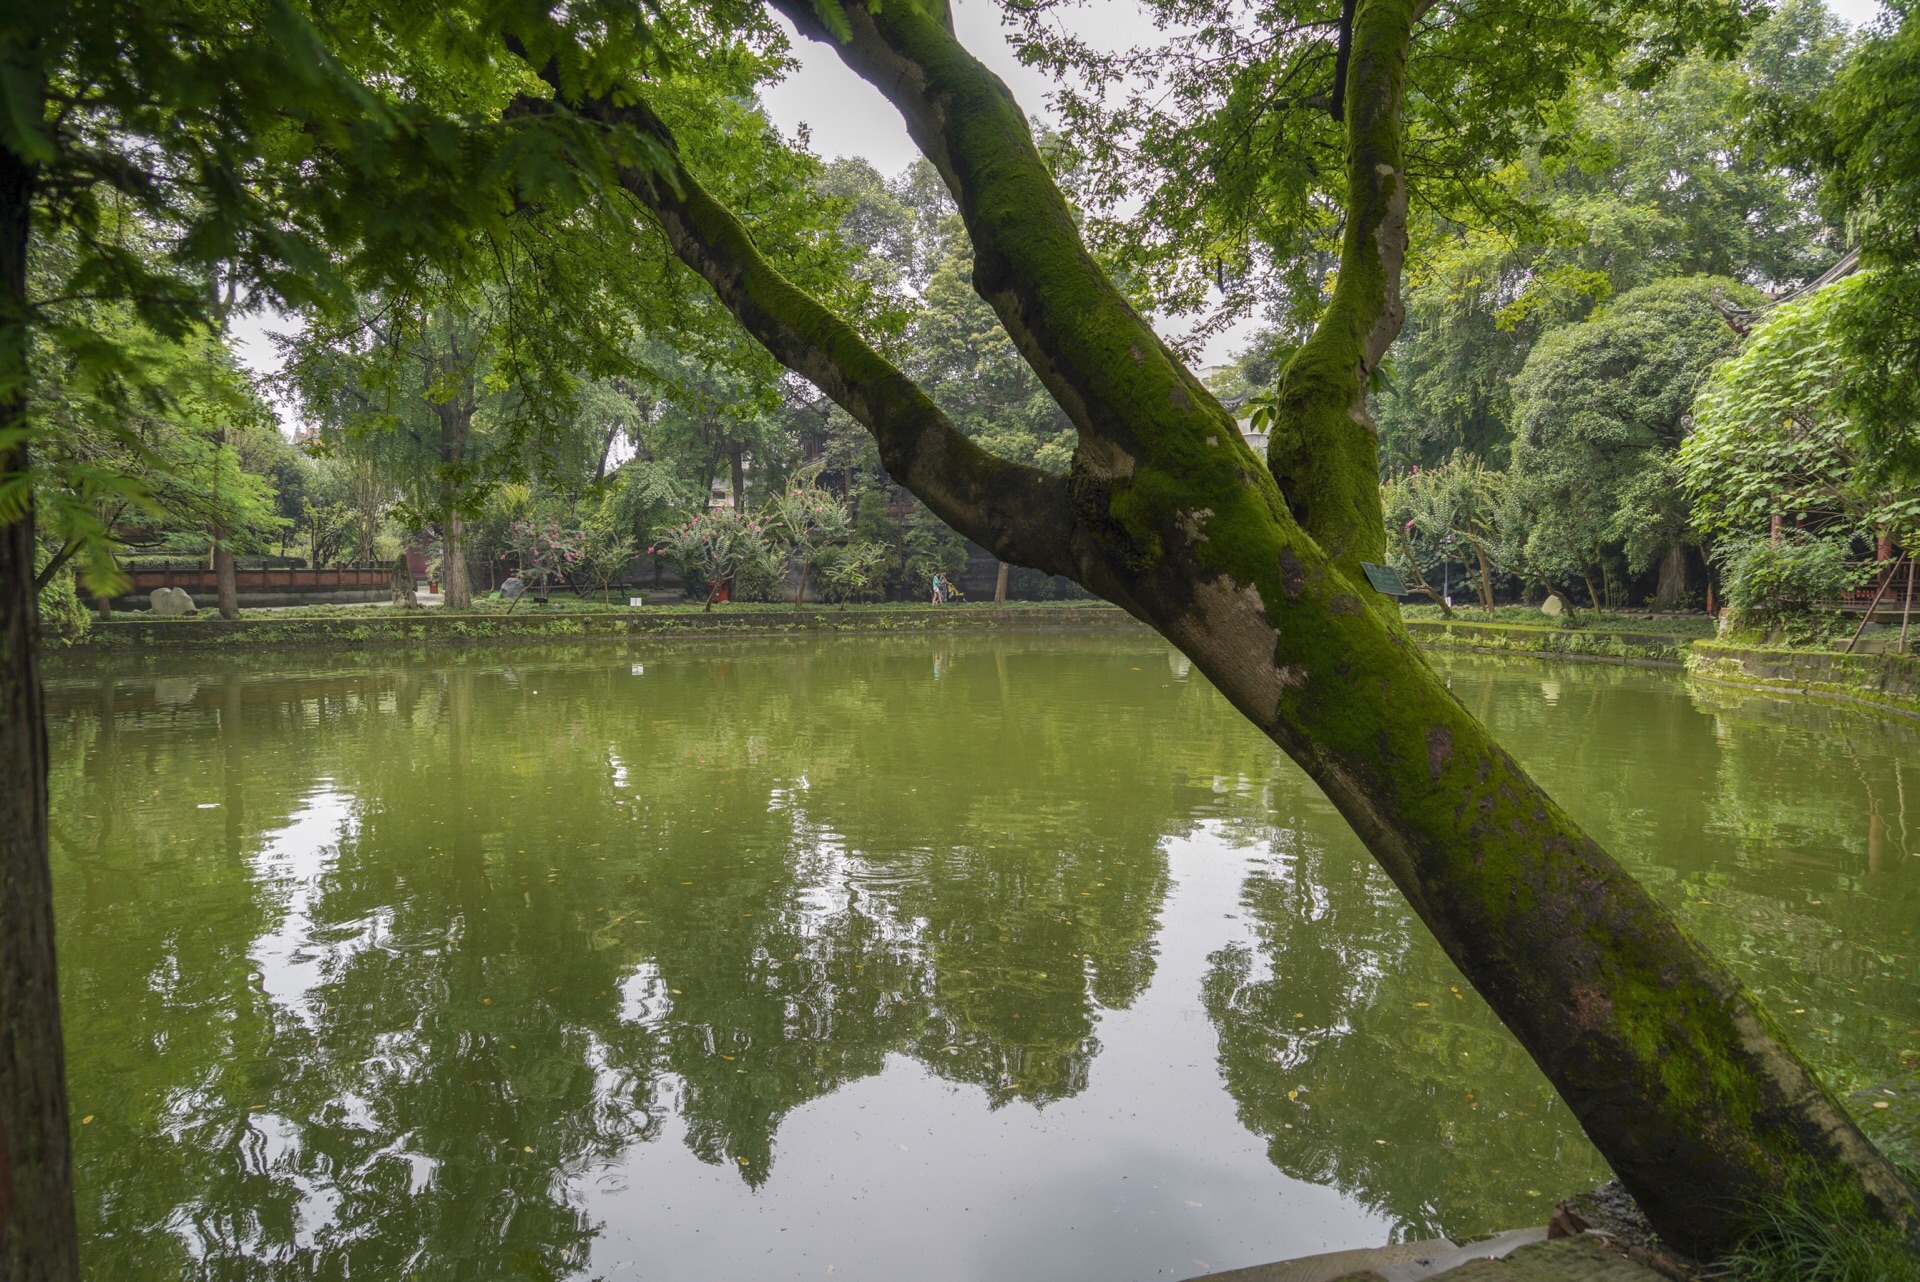 【携程攻略】崇州罨画池景点,门票8元/人，该园位于崇州市城区，面积不大，但很有一些历史了，罨画…